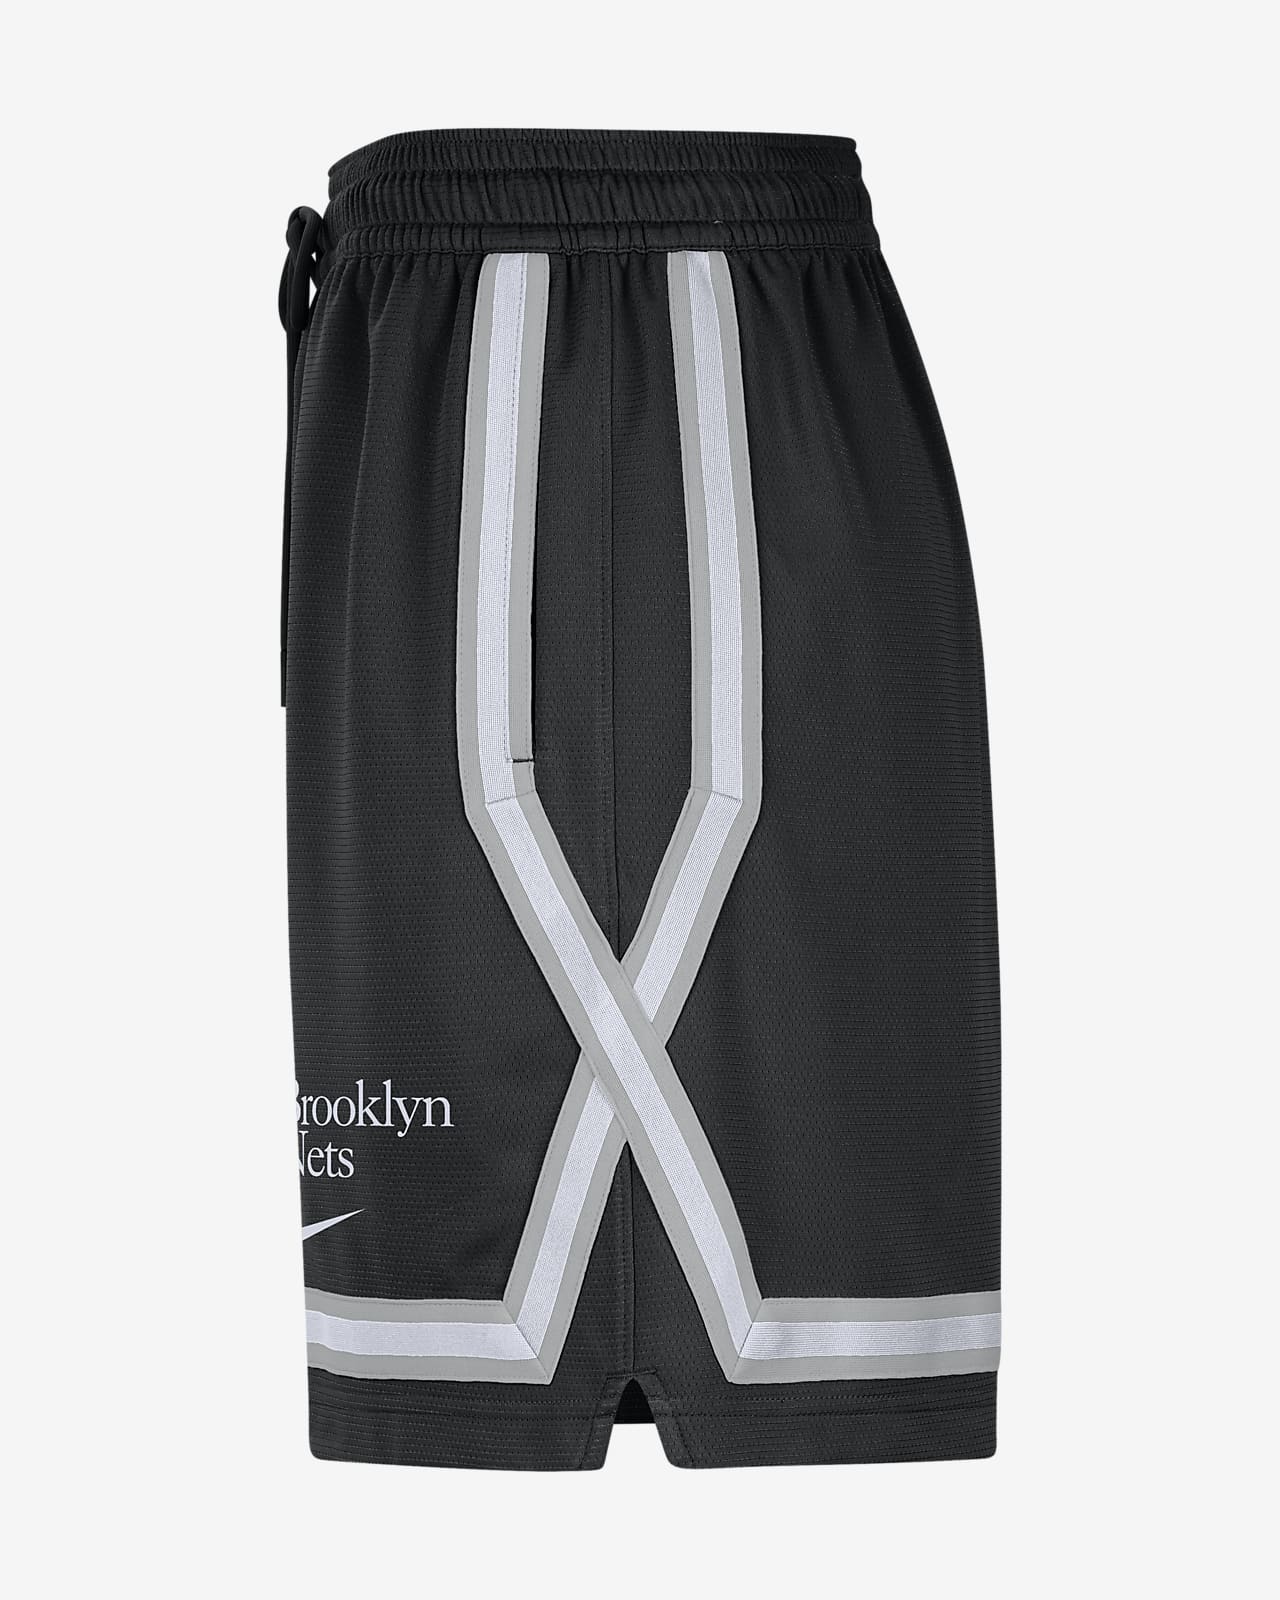 Shorts Nike Fly Crossover Feminino - Compre Agora